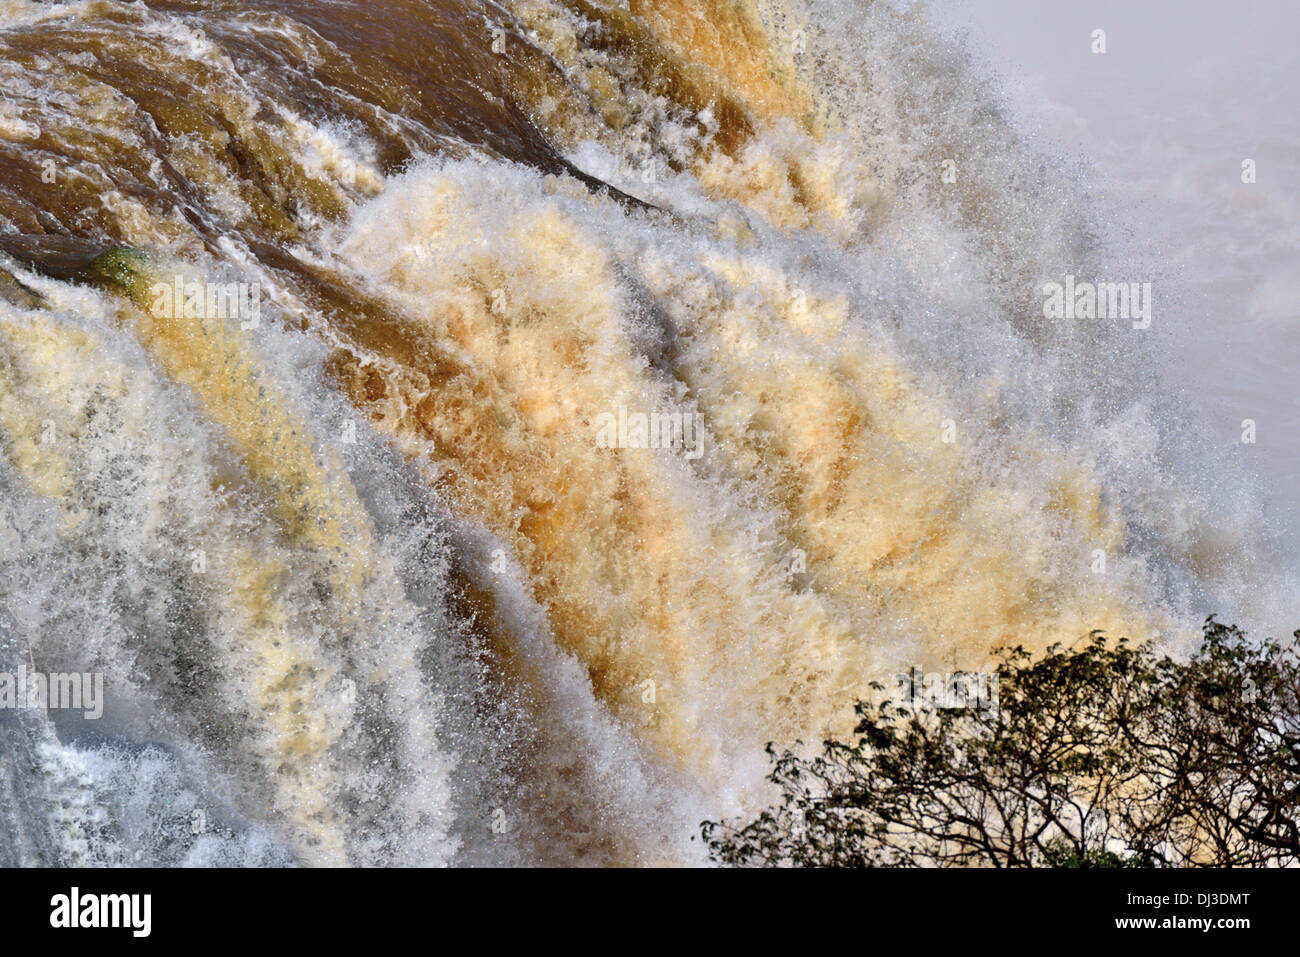 Le Brésil, le Parc National d'Iguaçu : Roaring eaux des chutes d'Iguaçu après de fortes chutes de pluie Banque D'Images